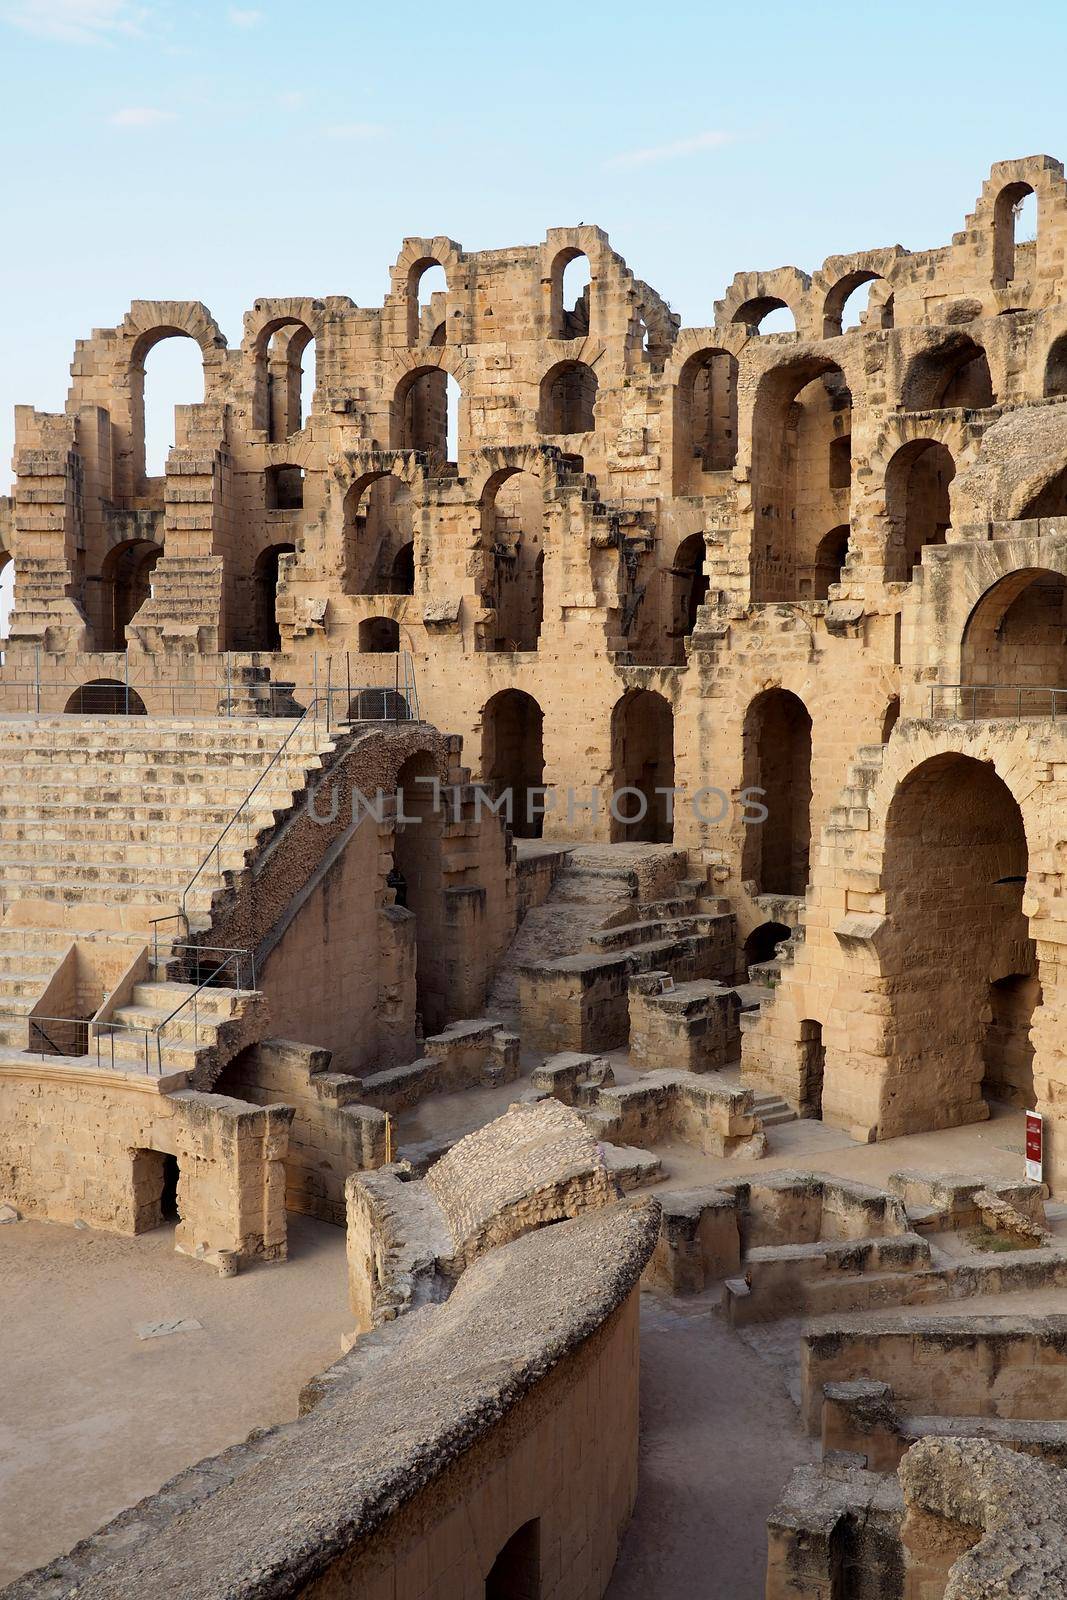 Coliseum at El Jem, Tunisia